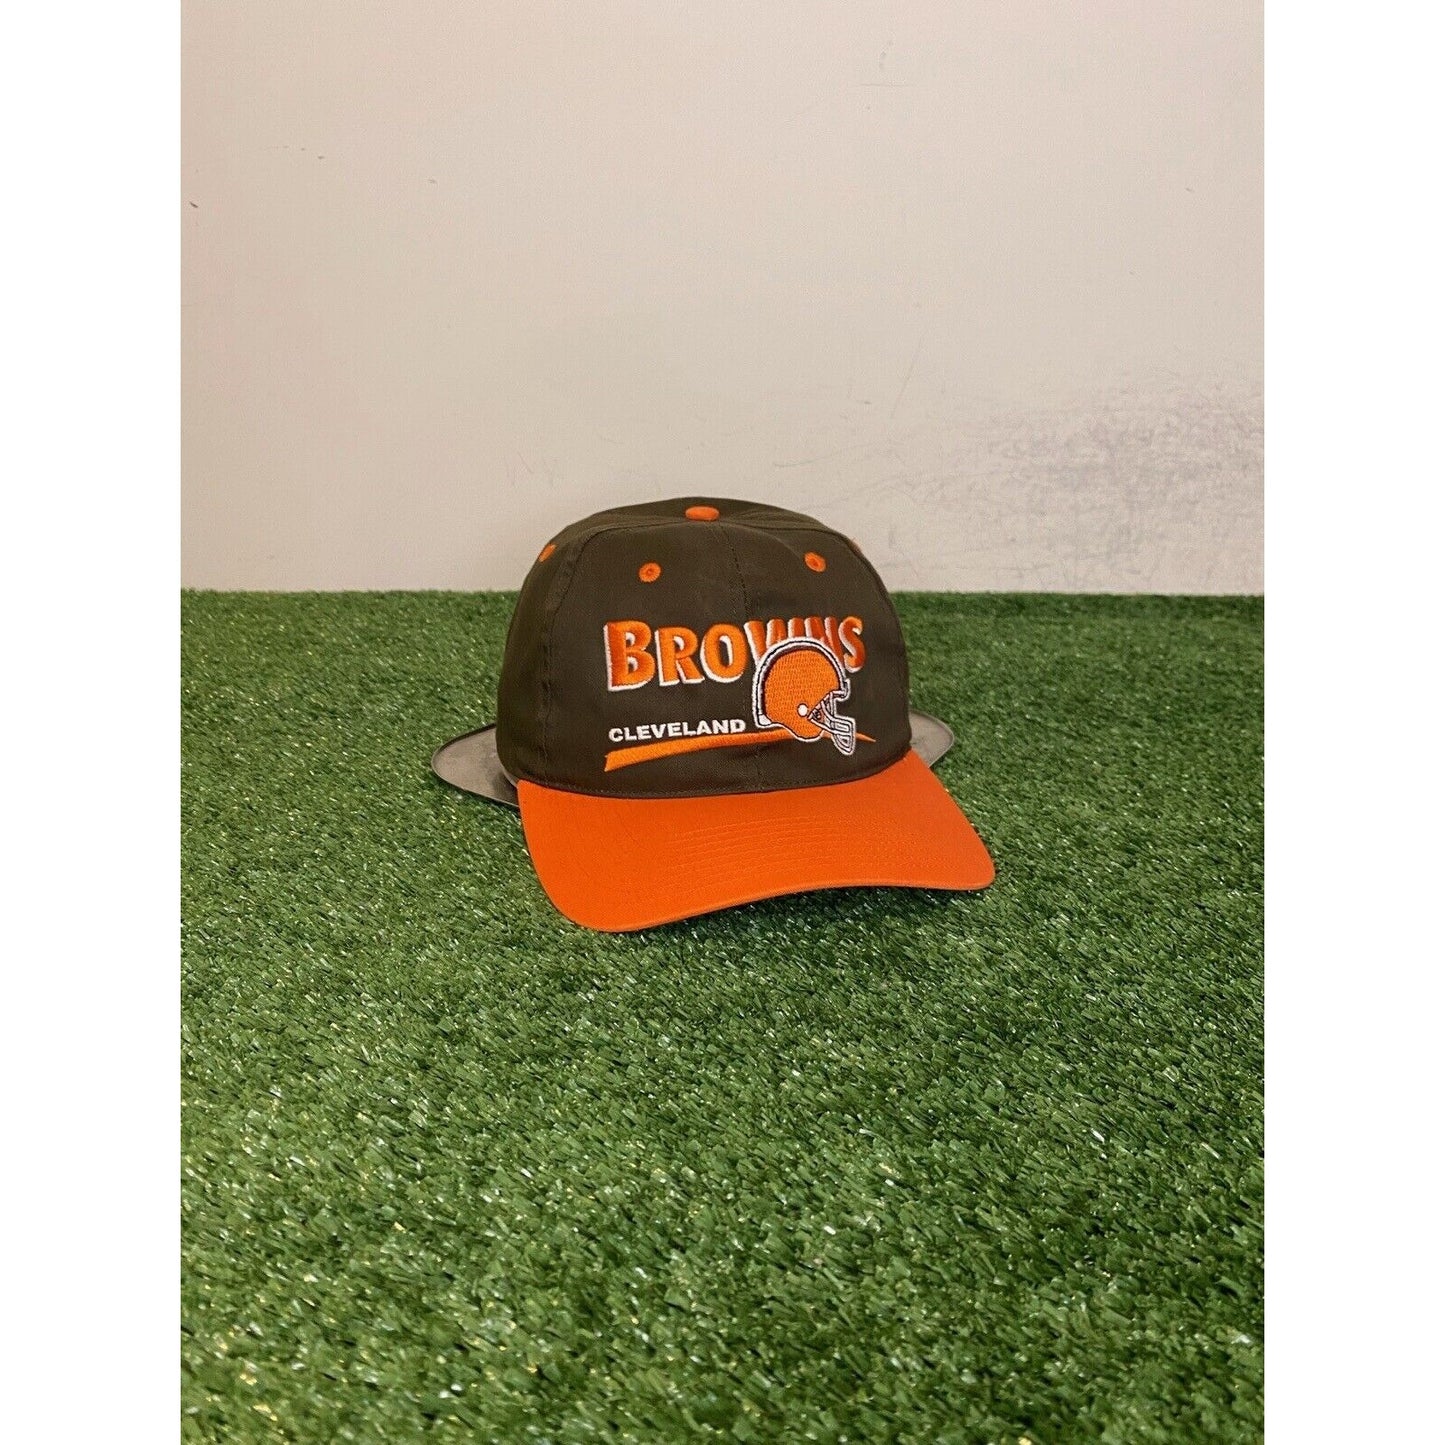 Vintage Cleveland Browns hat cap snap back orange brown split bar 90s mens retro